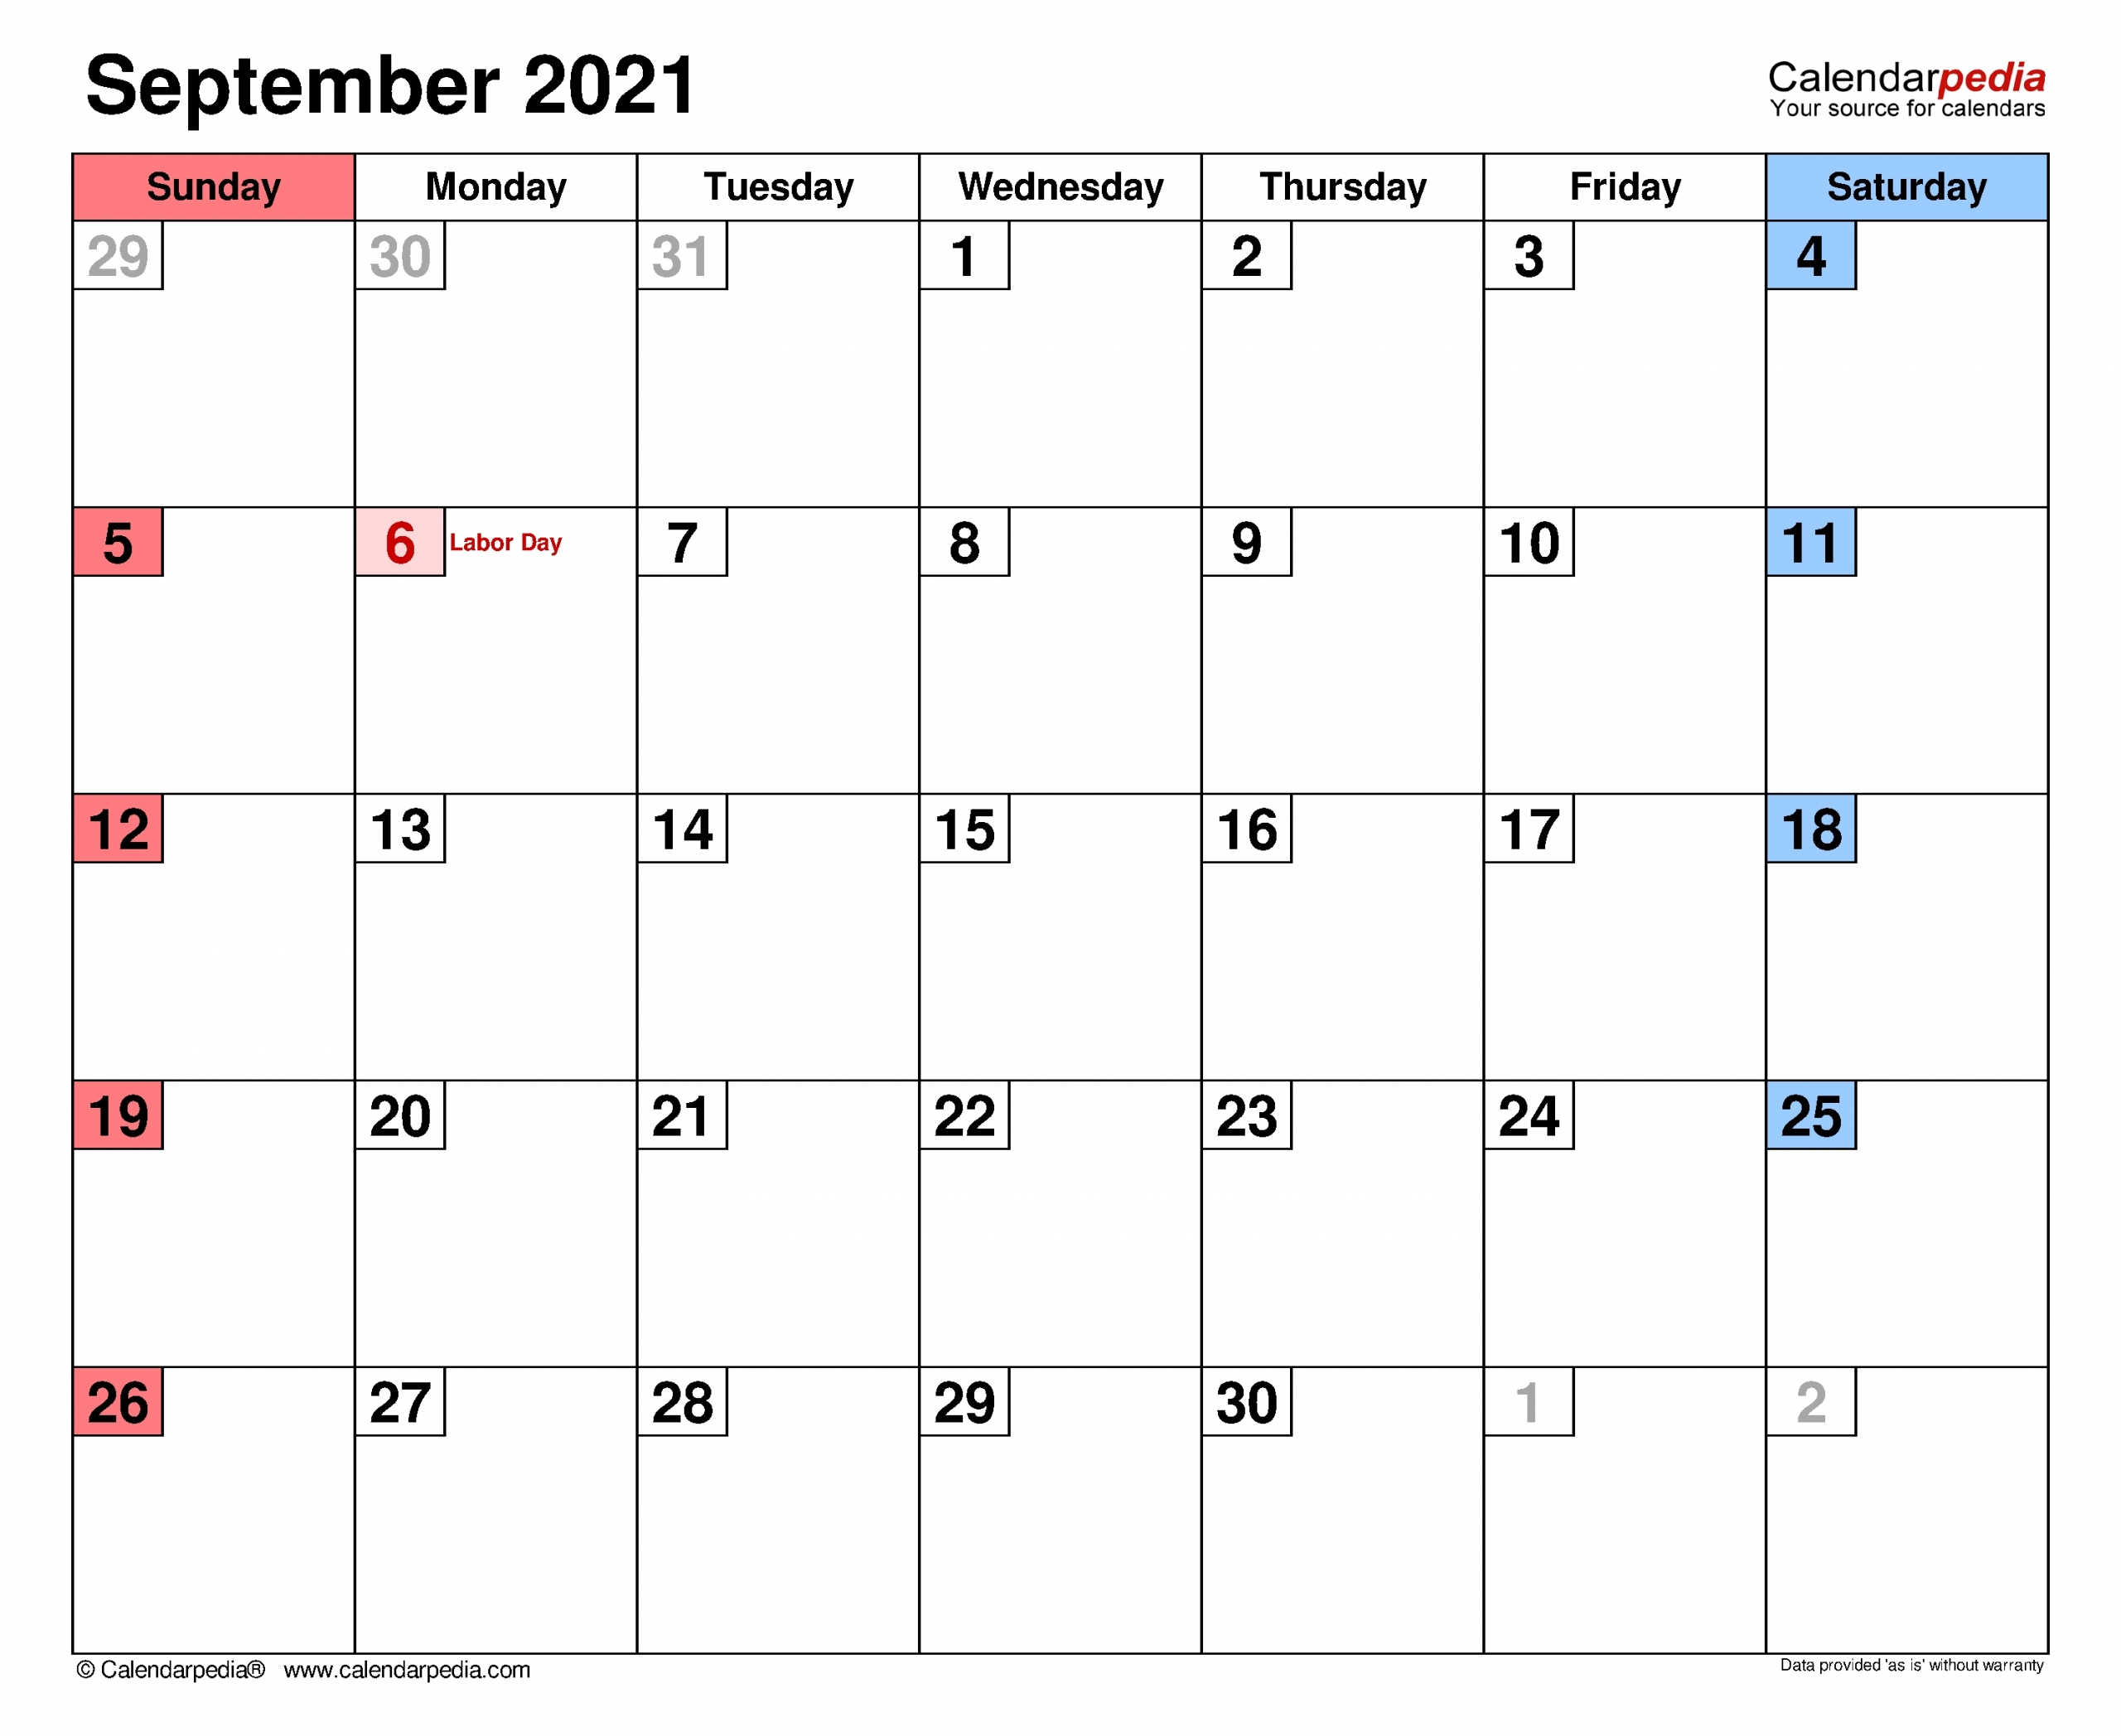 September Calendar 2021 With Holiday | Best Calendar Example September 2021 Calendar Panchang